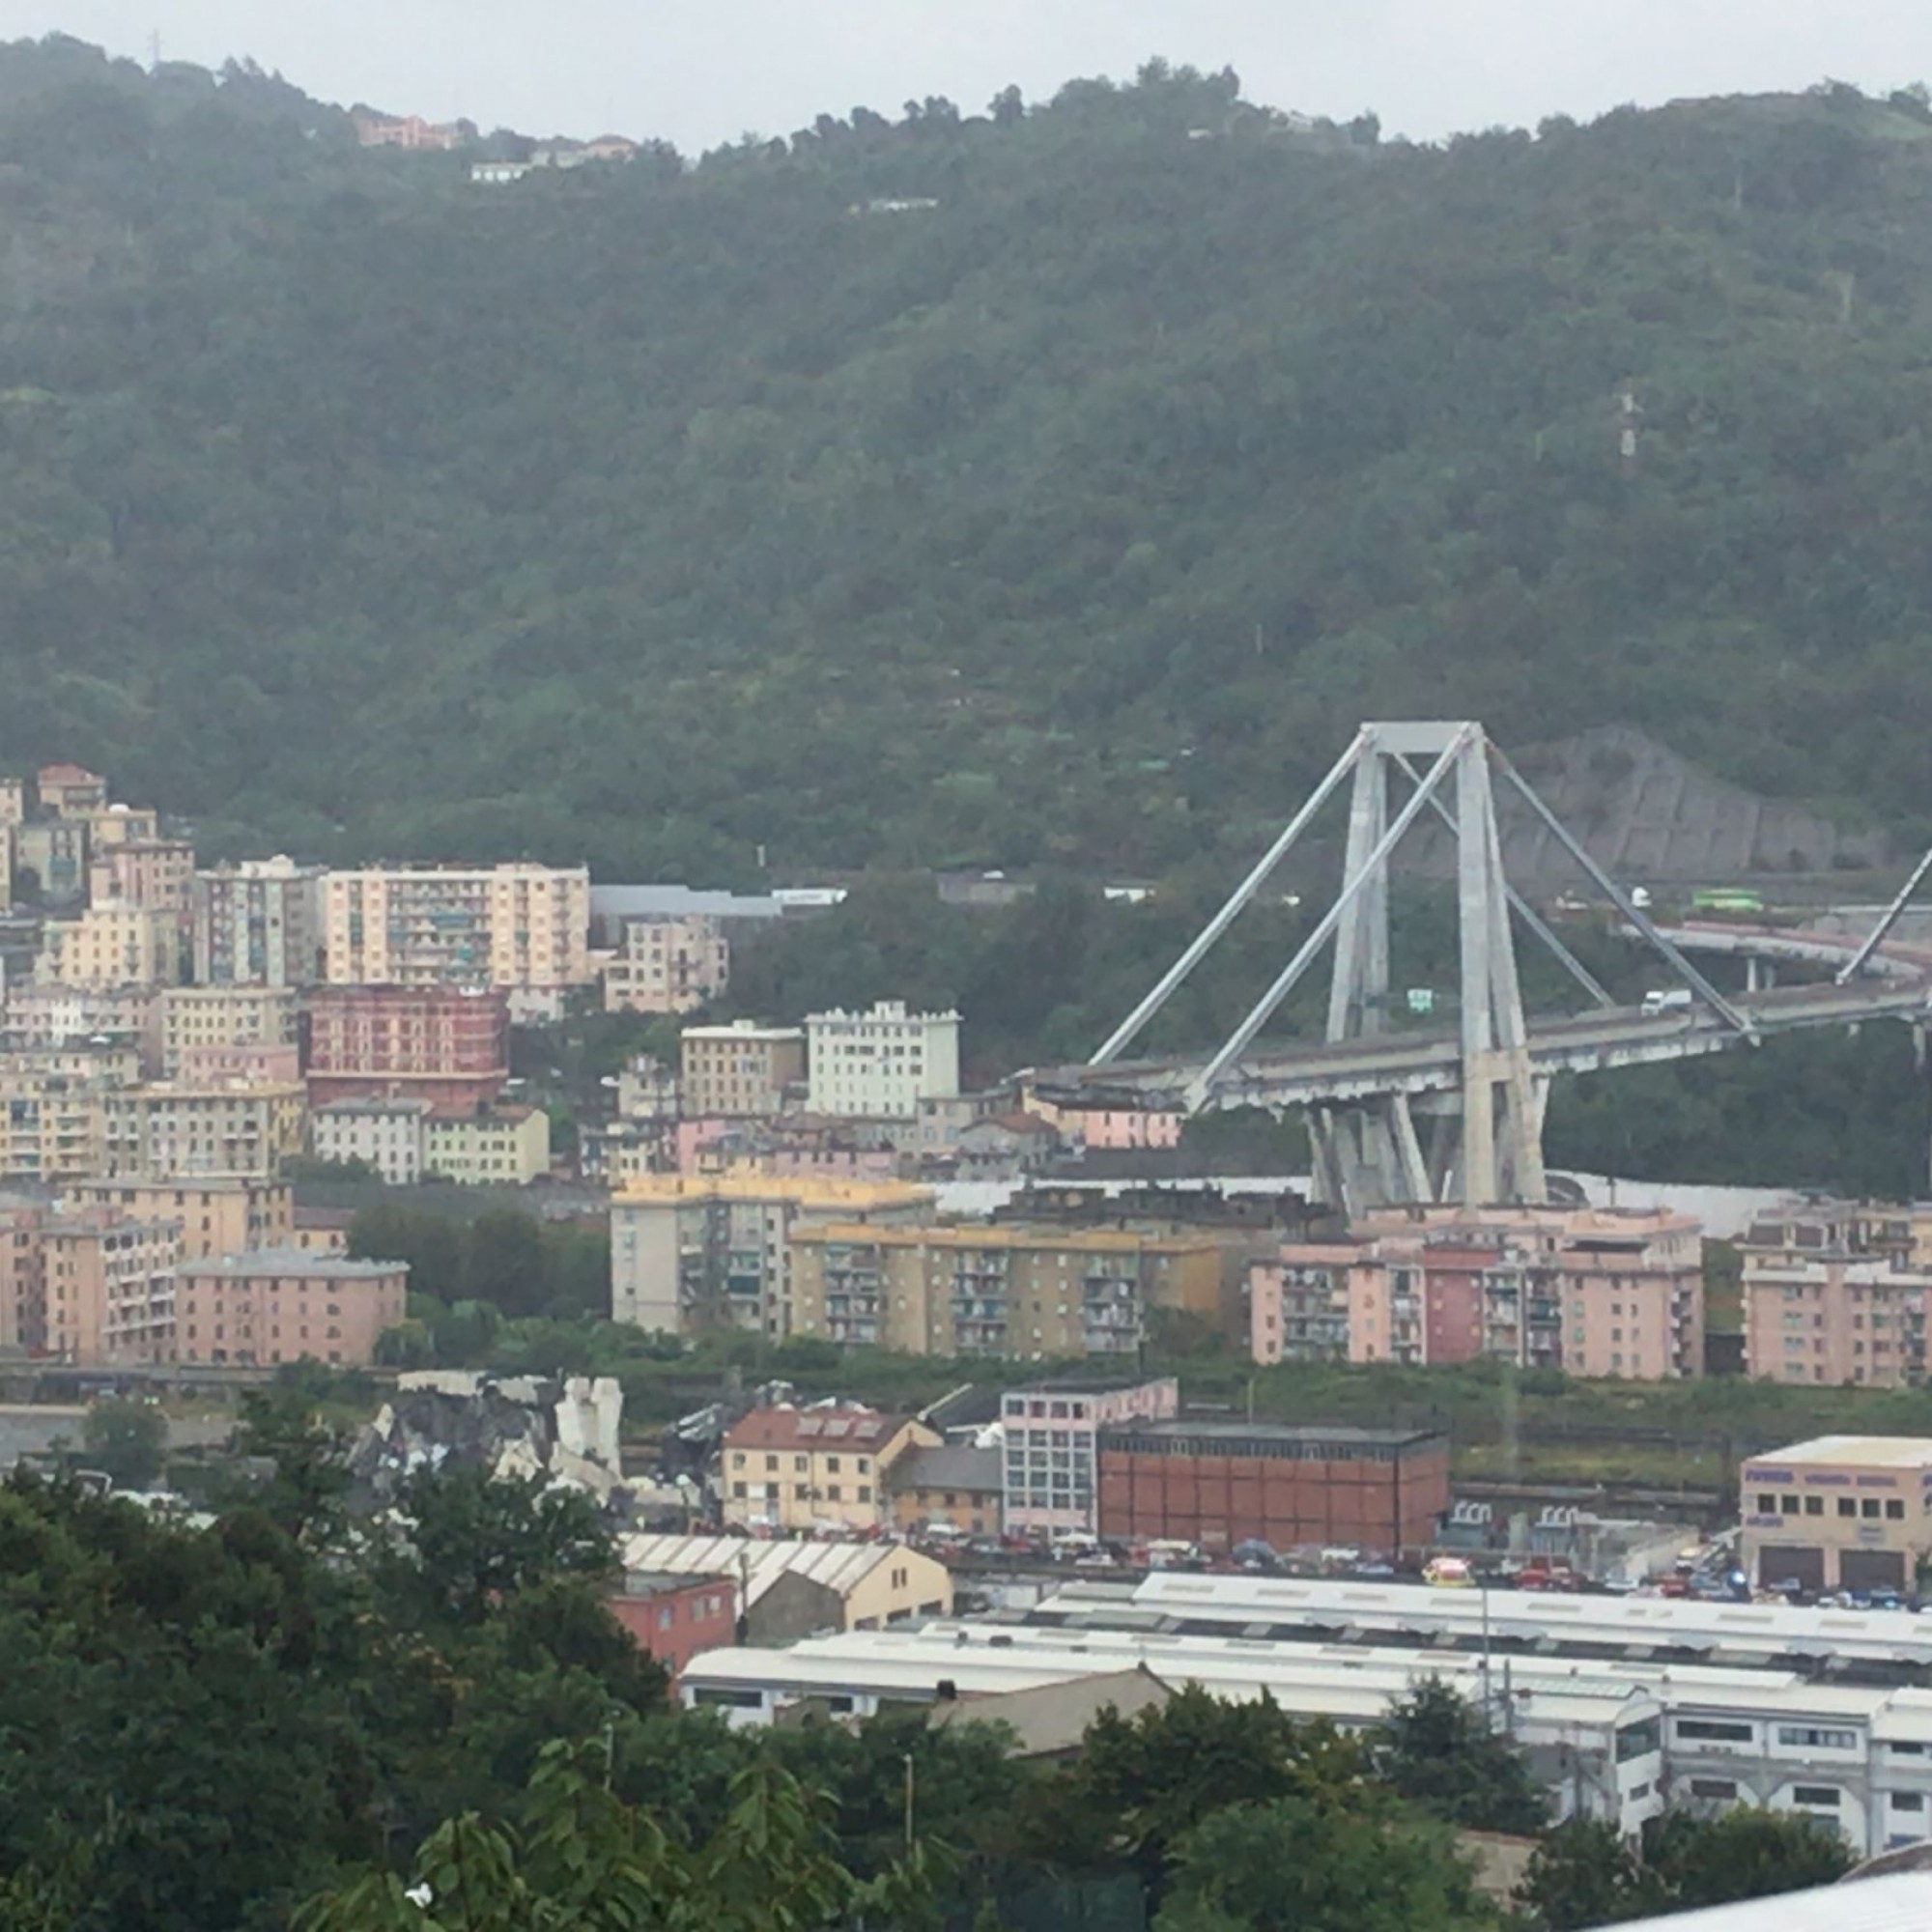 Die 1182 Meter lange Morandi-Brücke in Genua, mit offiziellem Namen Viadotto Polcevera, wurde 1967 eröffnet. Am 14. August 2018 stürzte ein 200 Meter langes Stück der vorgespannten Stahlbetonbrücke ein, wobei 43 Menschen ums Leben kamen. Die Ermittlungen 